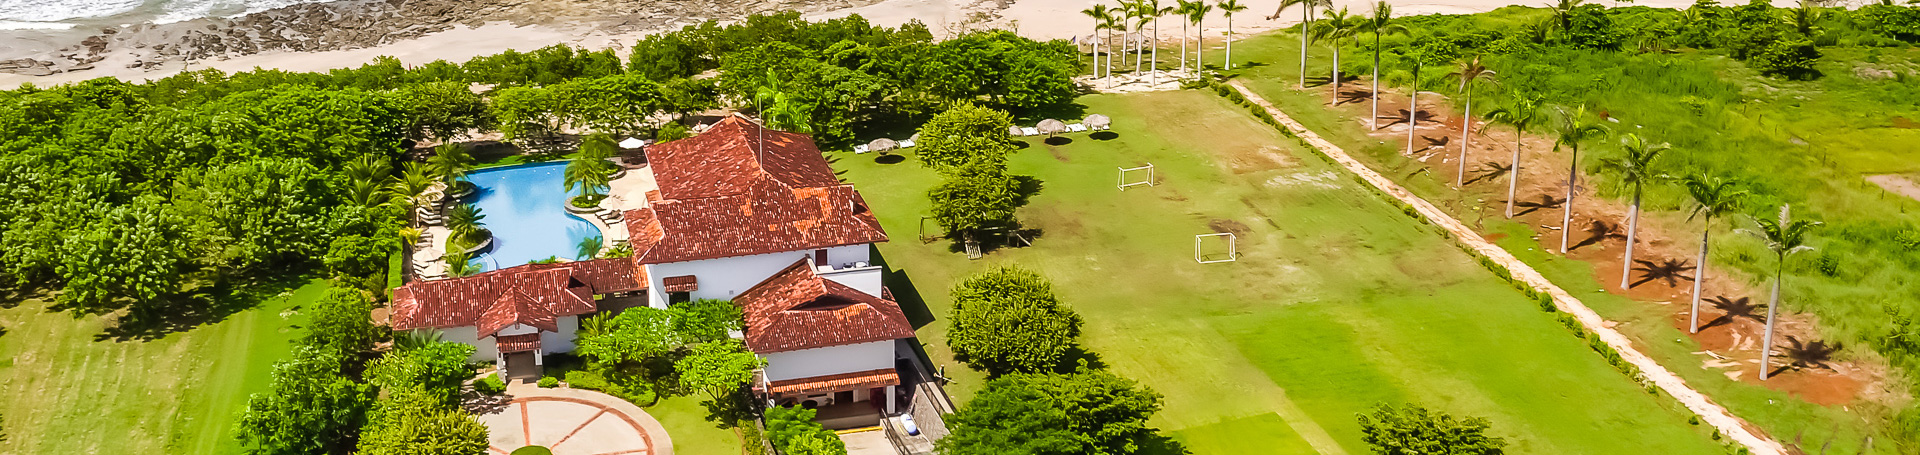 Hacienda Pinilla Beach Club aerial view